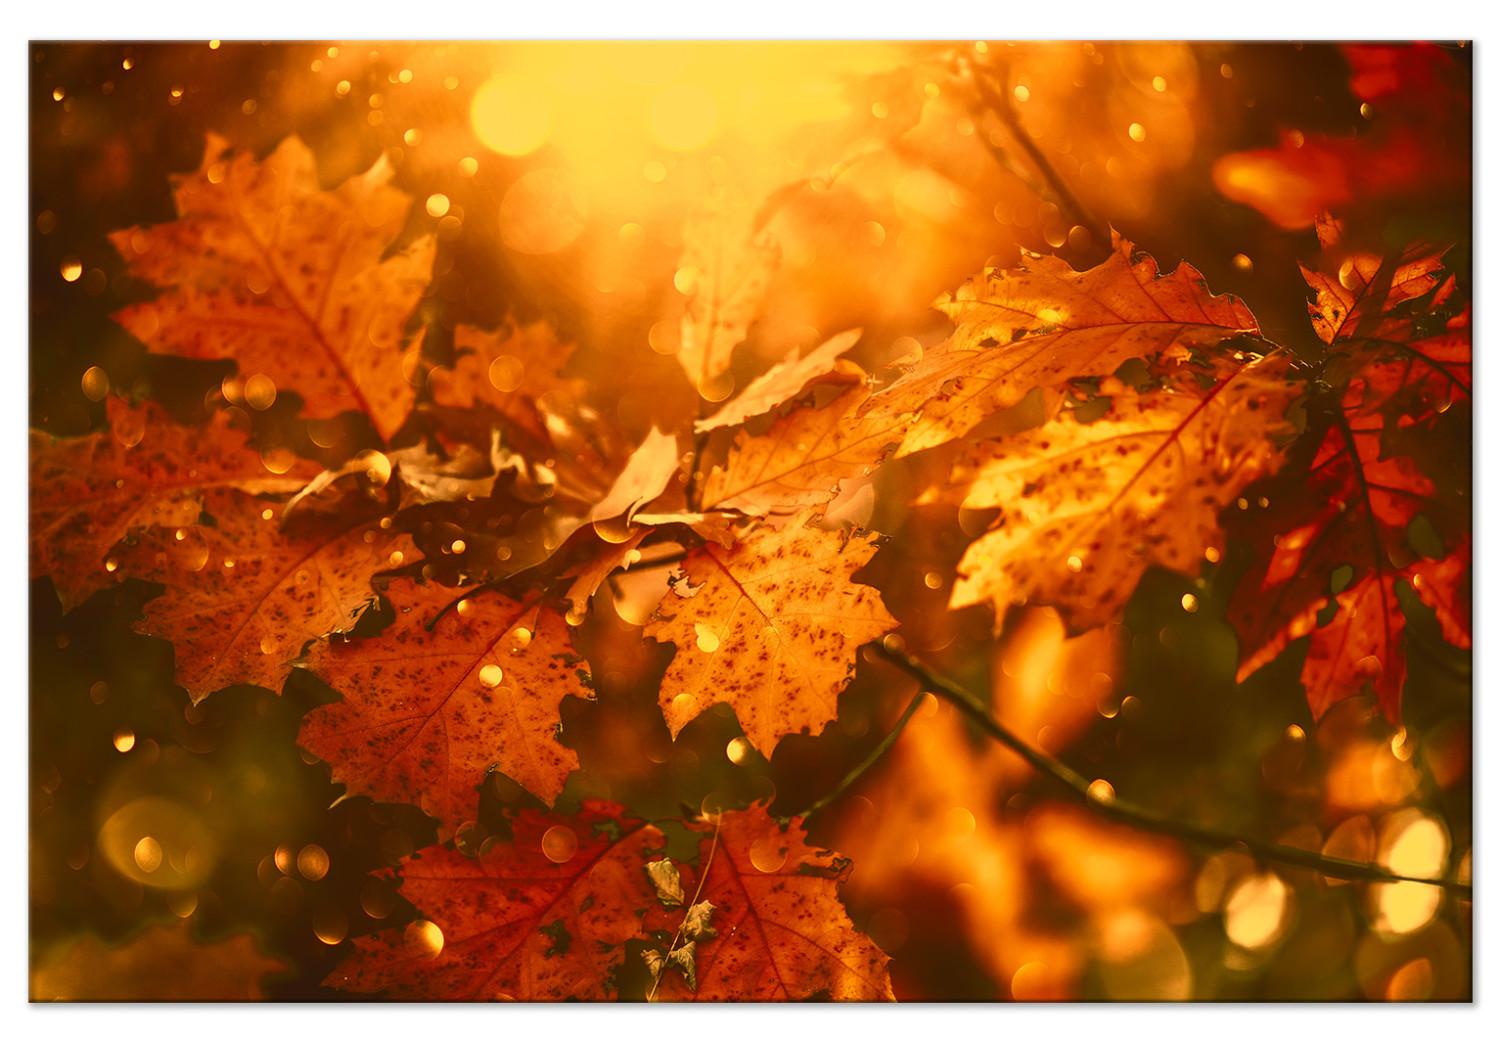 Cuadro Hojas de roble otoñales - fotografía de hojas doradas al sol